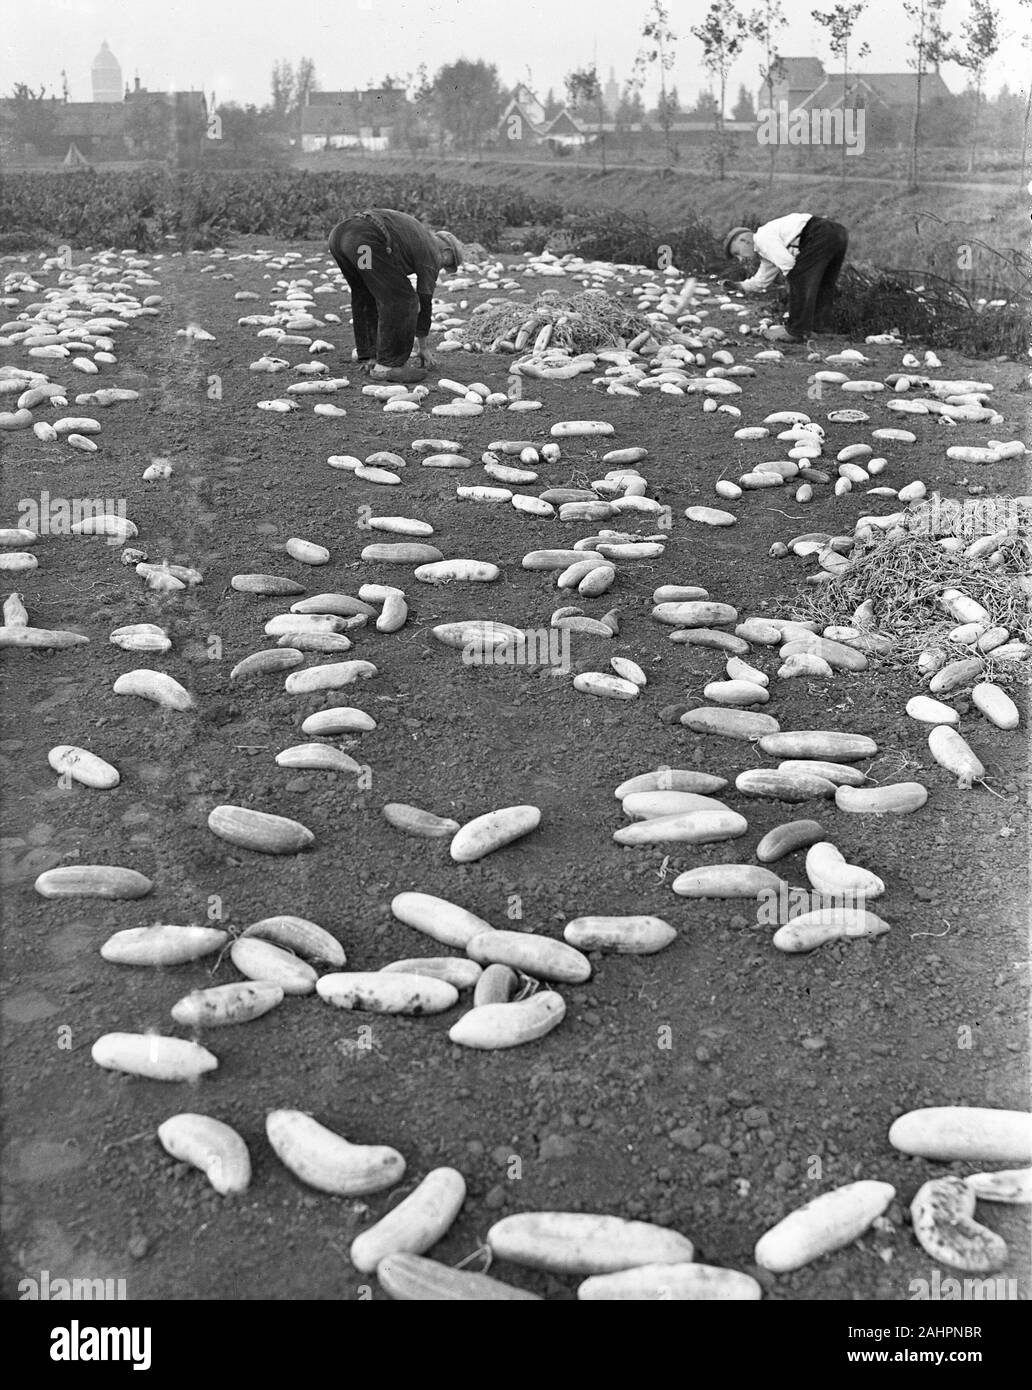 Les hommes ramasser des concombres qui pourrissent dans un champ ca. 16 octobre 1947 Banque D'Images